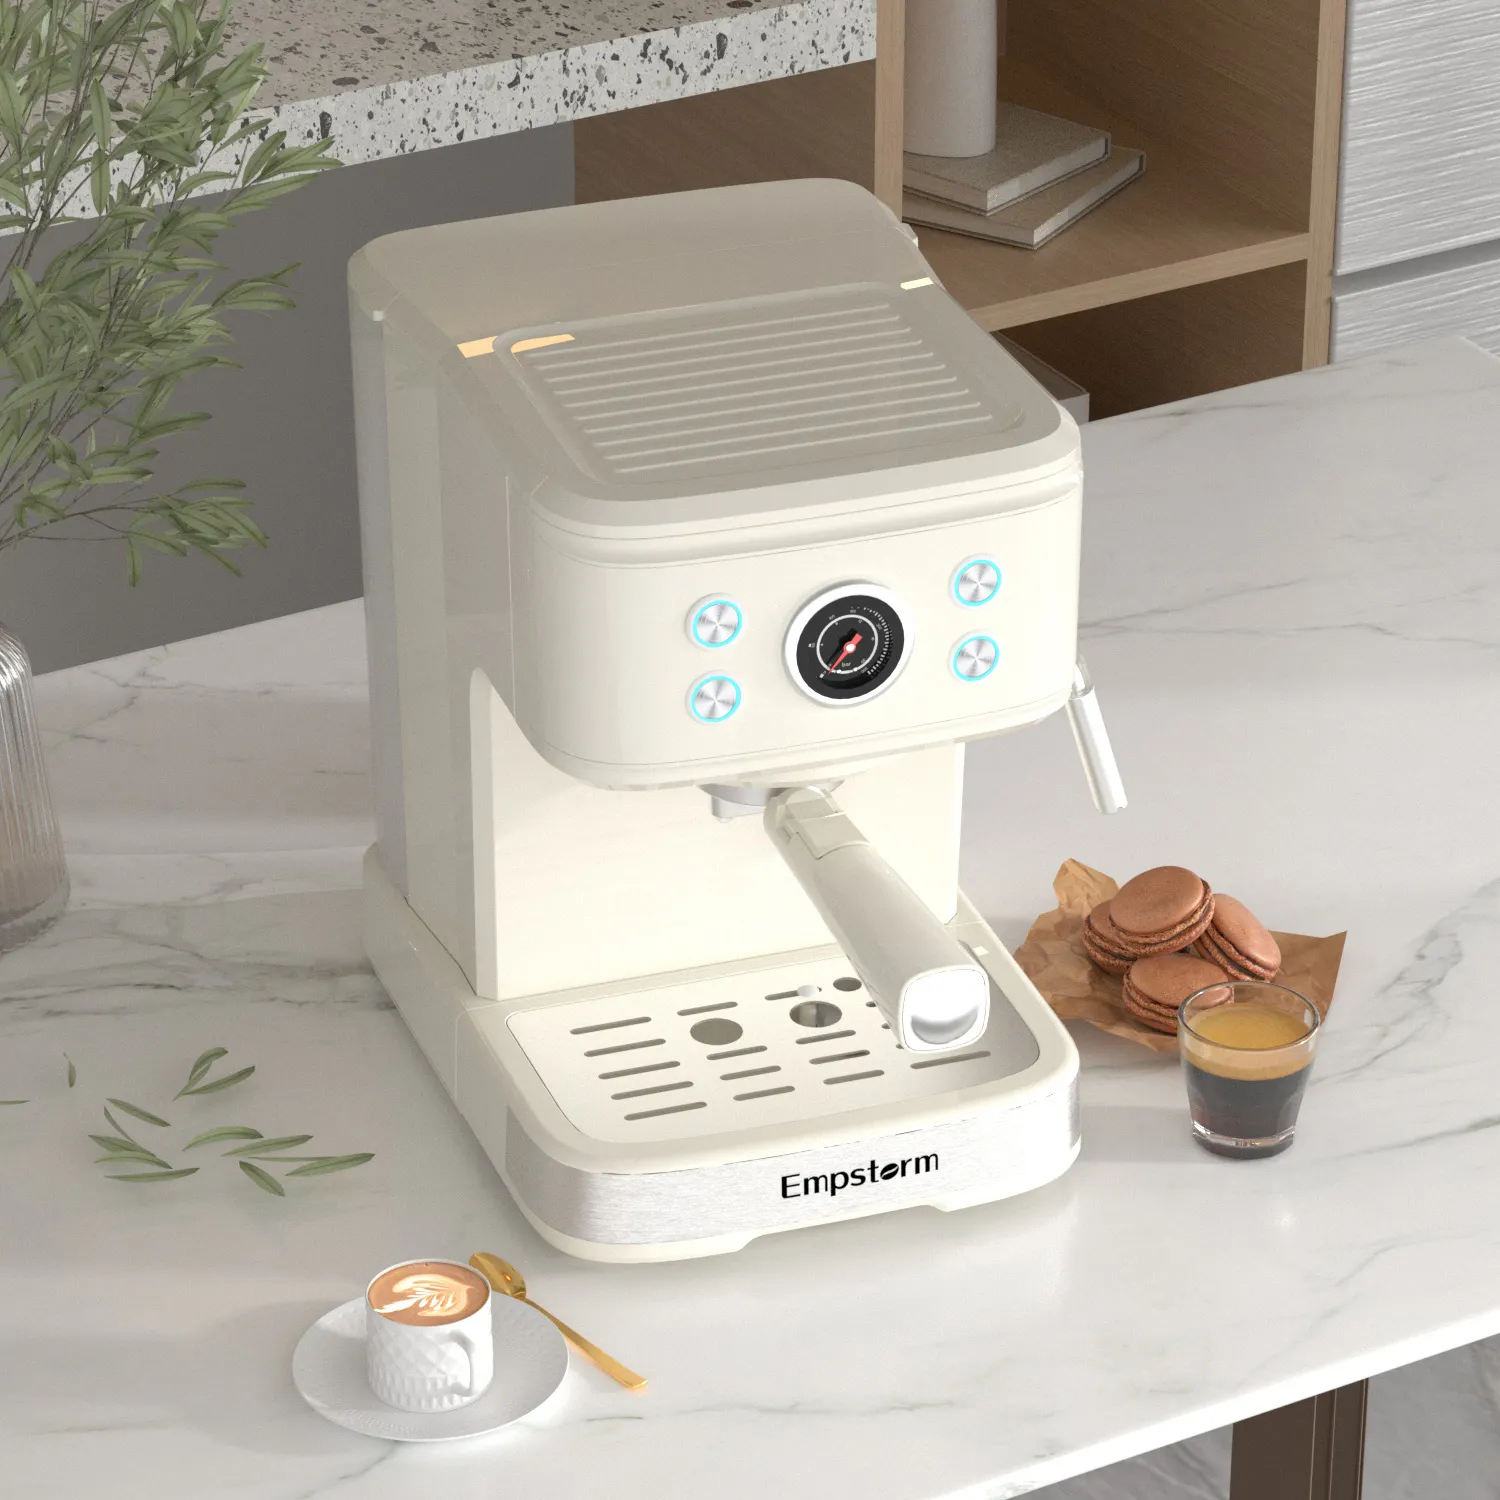 ماكينة صنع قهوة اسبريسو للاستعمال المنزلي، مع مقياس ضغط 20 بار للتحكم بسهولة، آلة صنع قهوة اسبريسو إيطالية ذات هيكل من الفولاذ المقاوم للصدأ